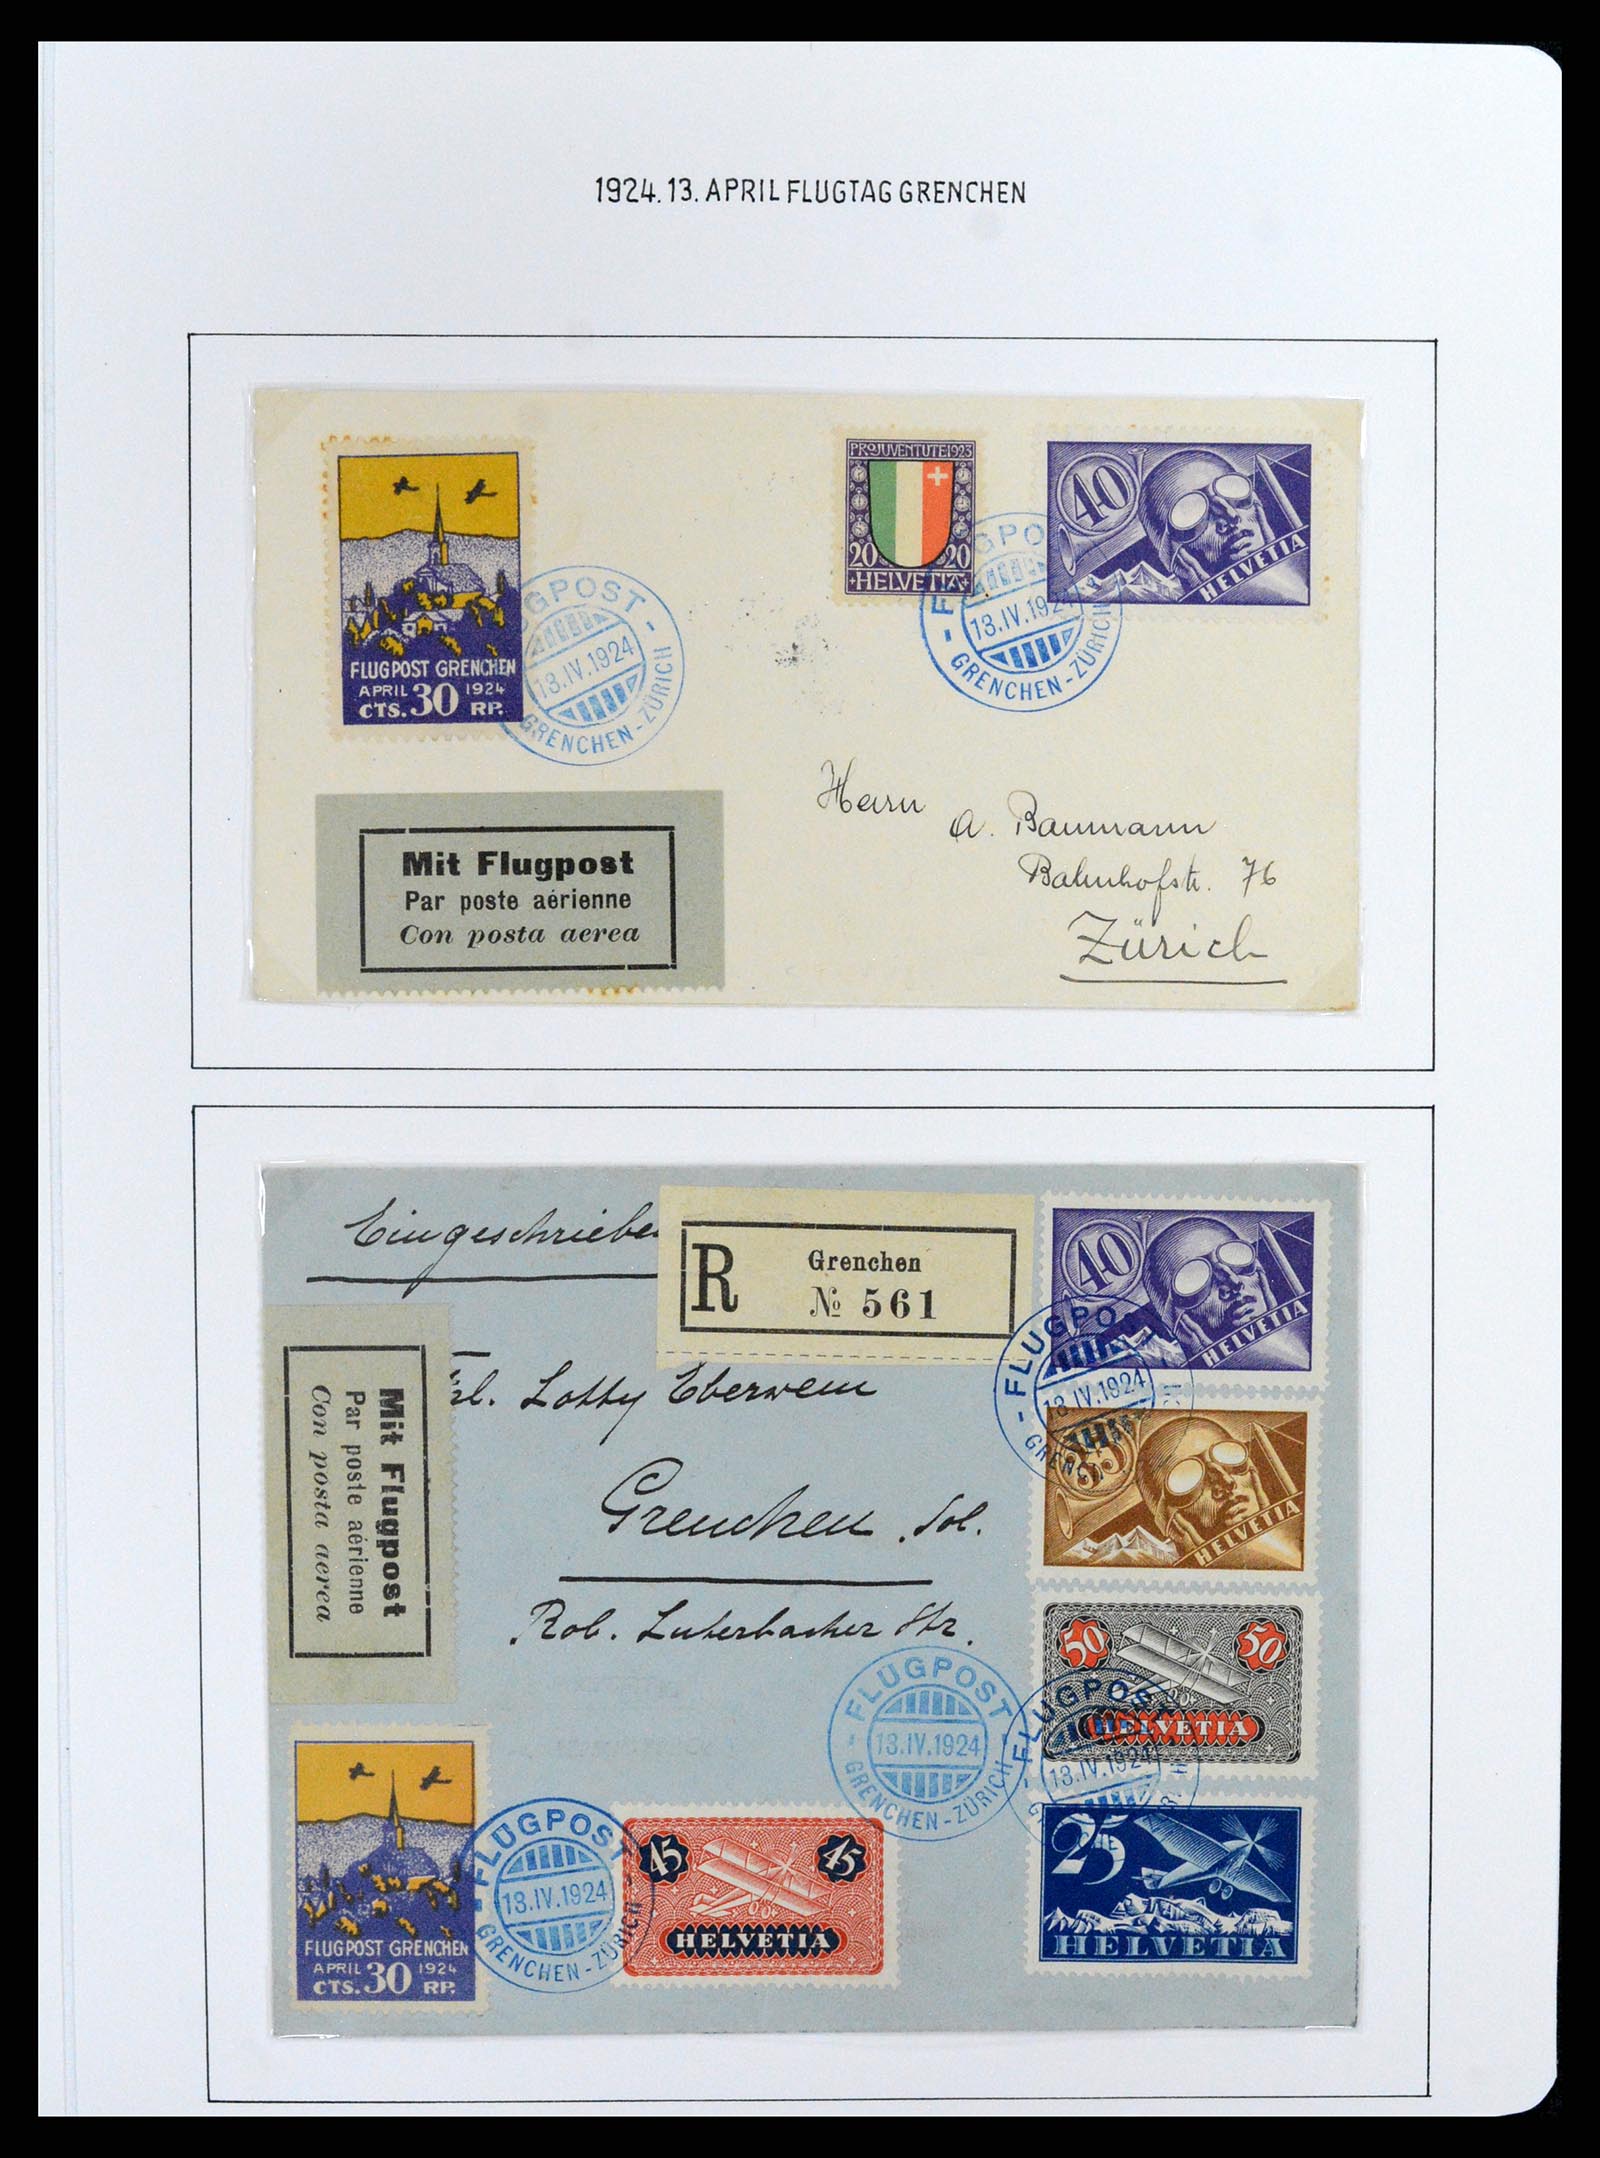 37700 012 - Postzegelverzameling 37700 Zwitserland luchtpost brieven collectie 19